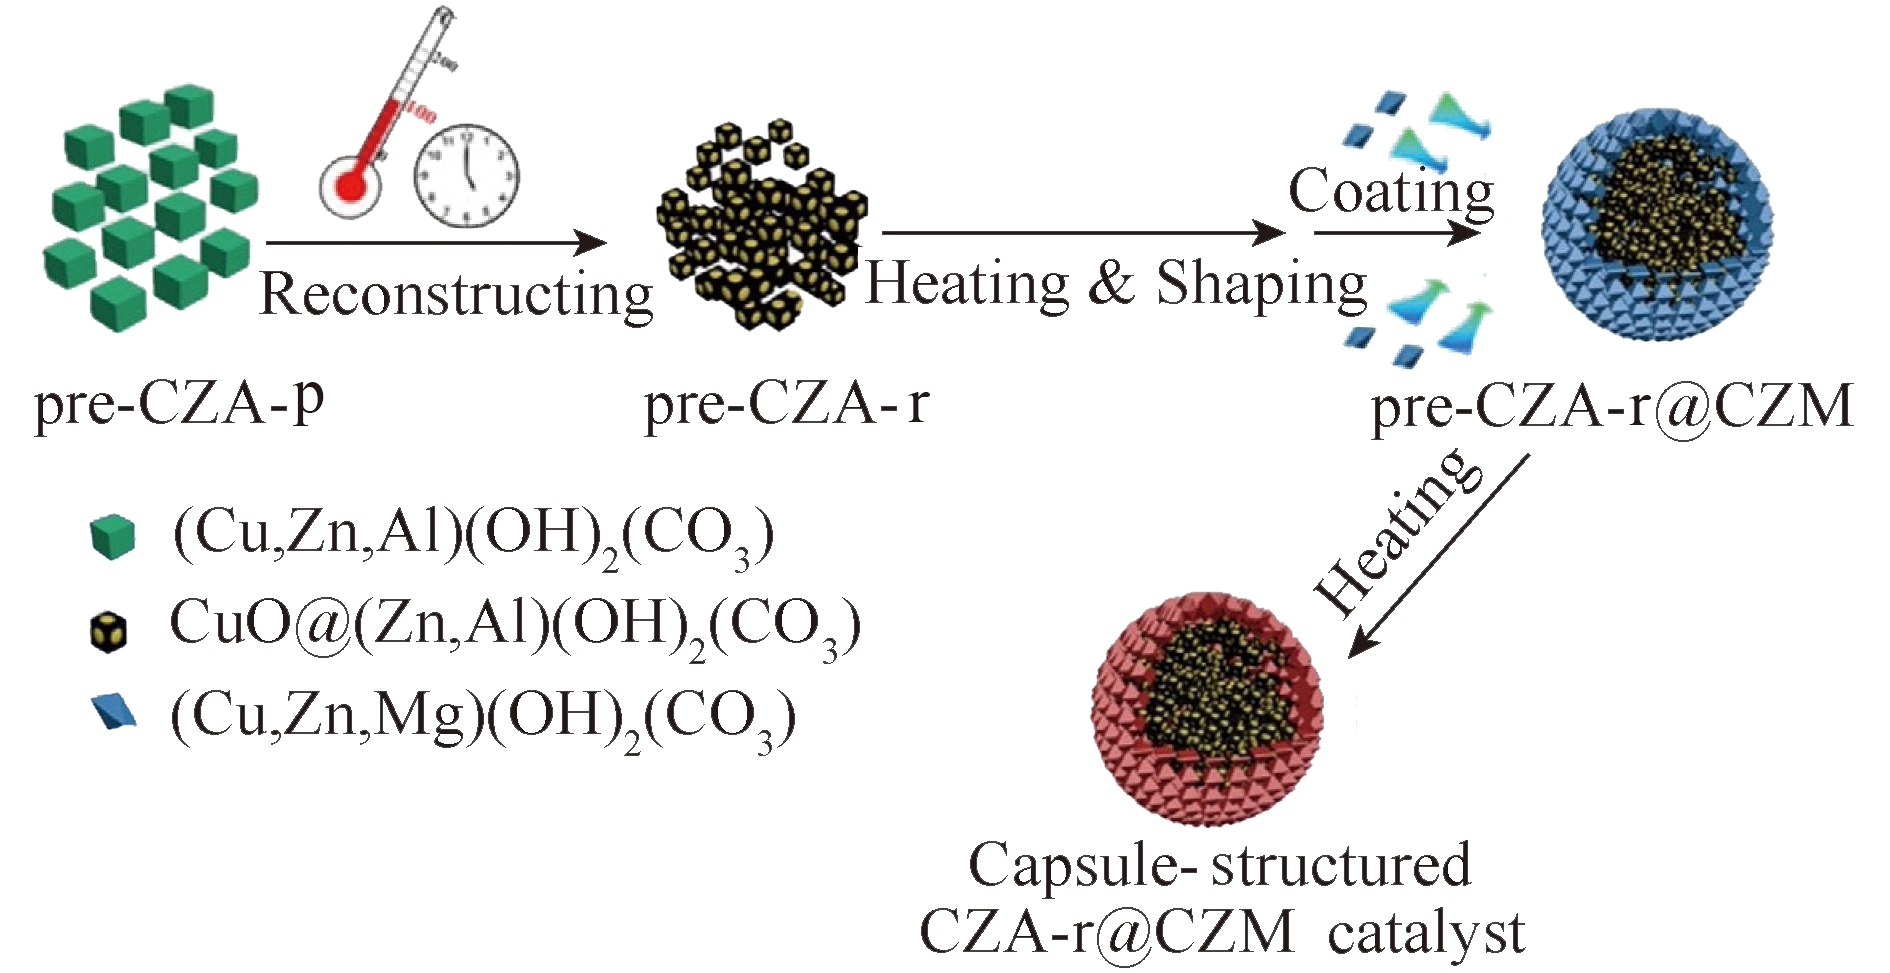 CO2合成醇酯类化学品和高分子材料研究进展